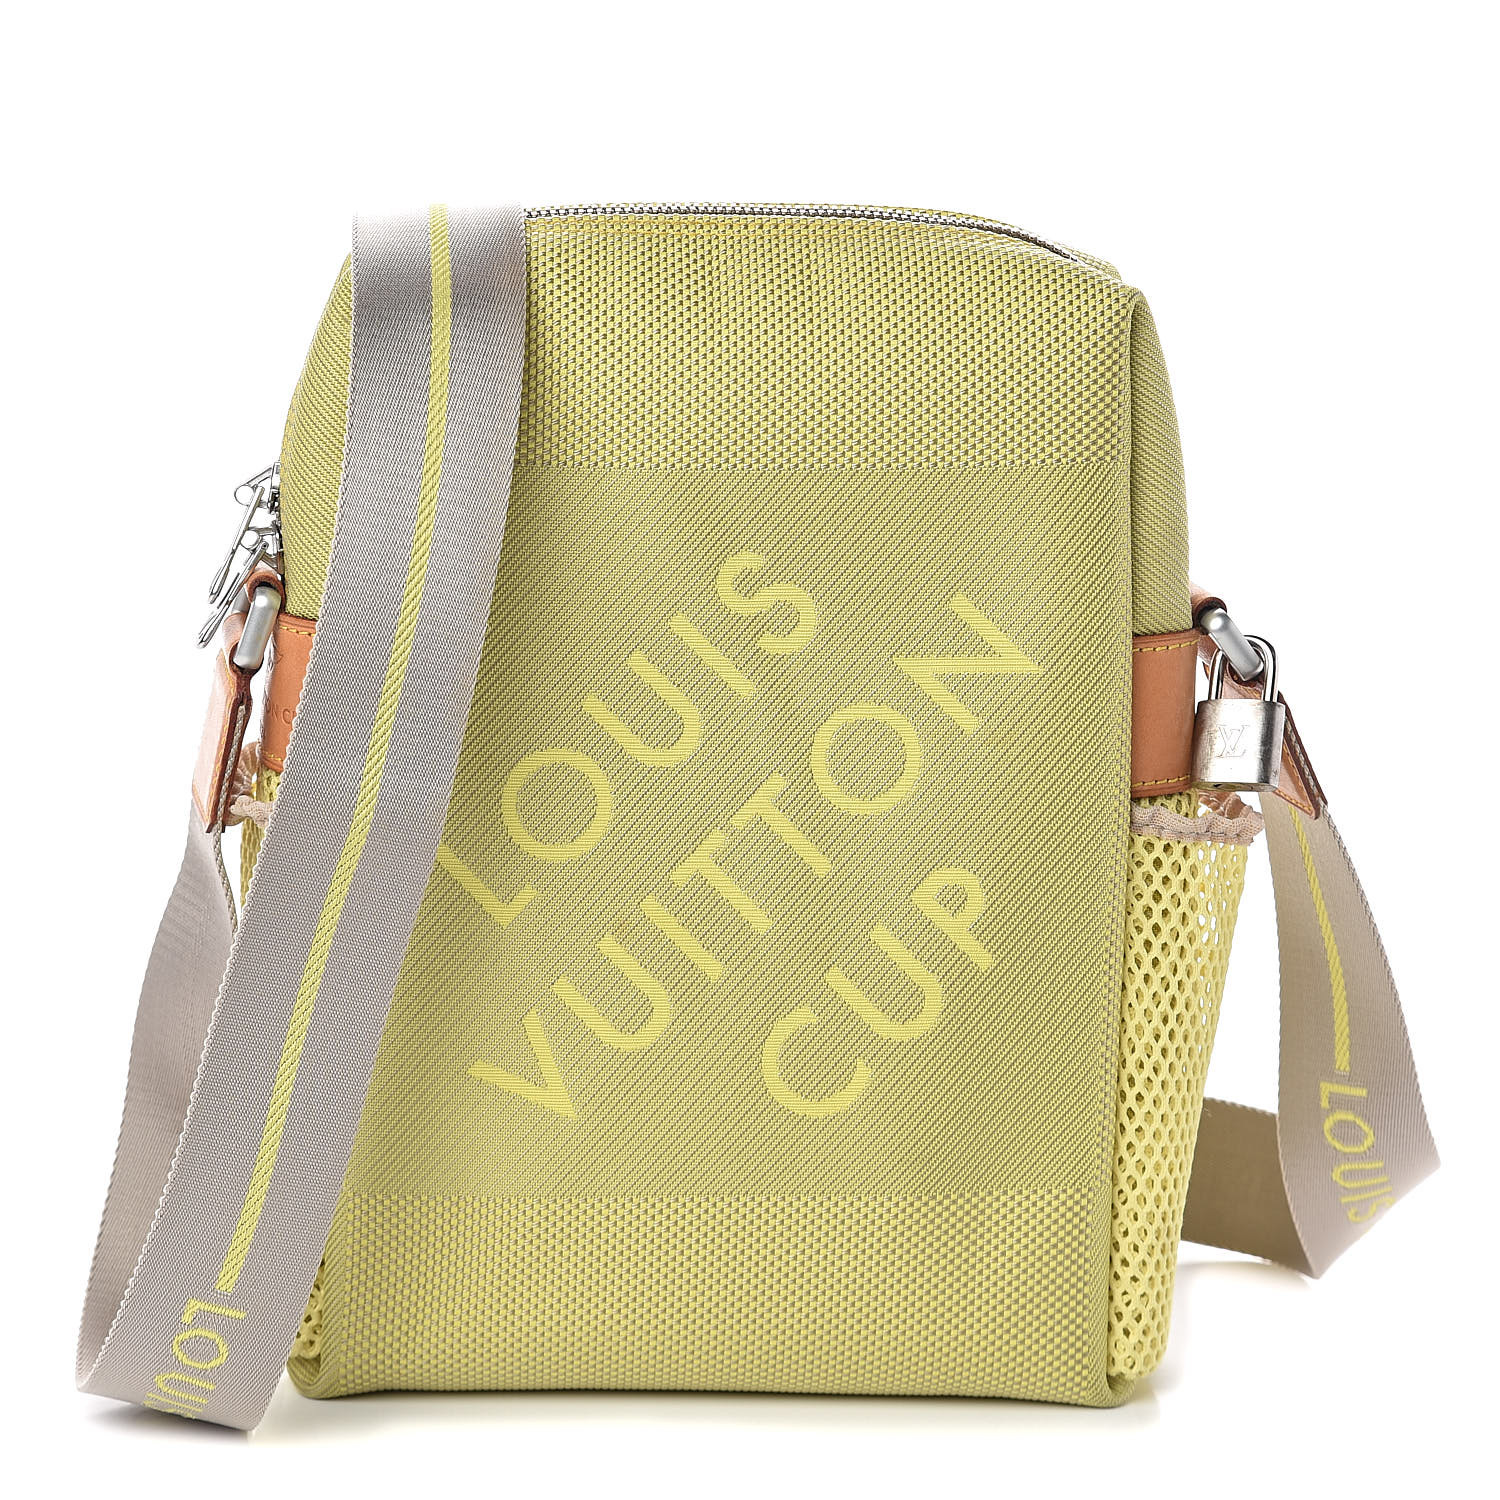 Sold at Auction: Louis Vuitton Damier Geant Canvas Americas Cup Bag